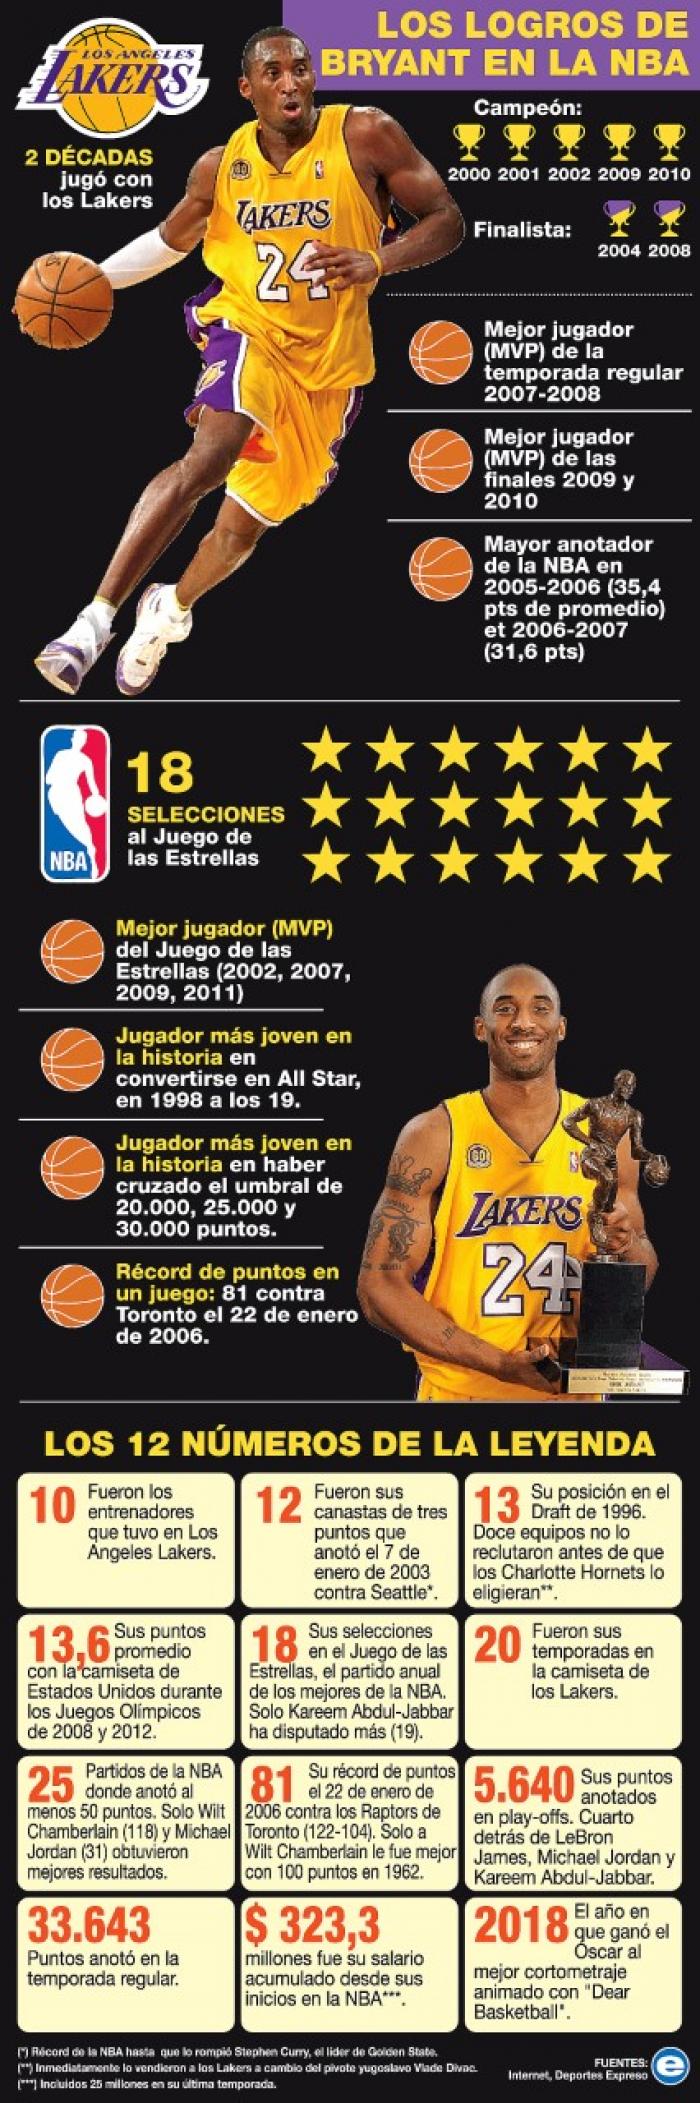 La brillante carrera de Kobe Bryant